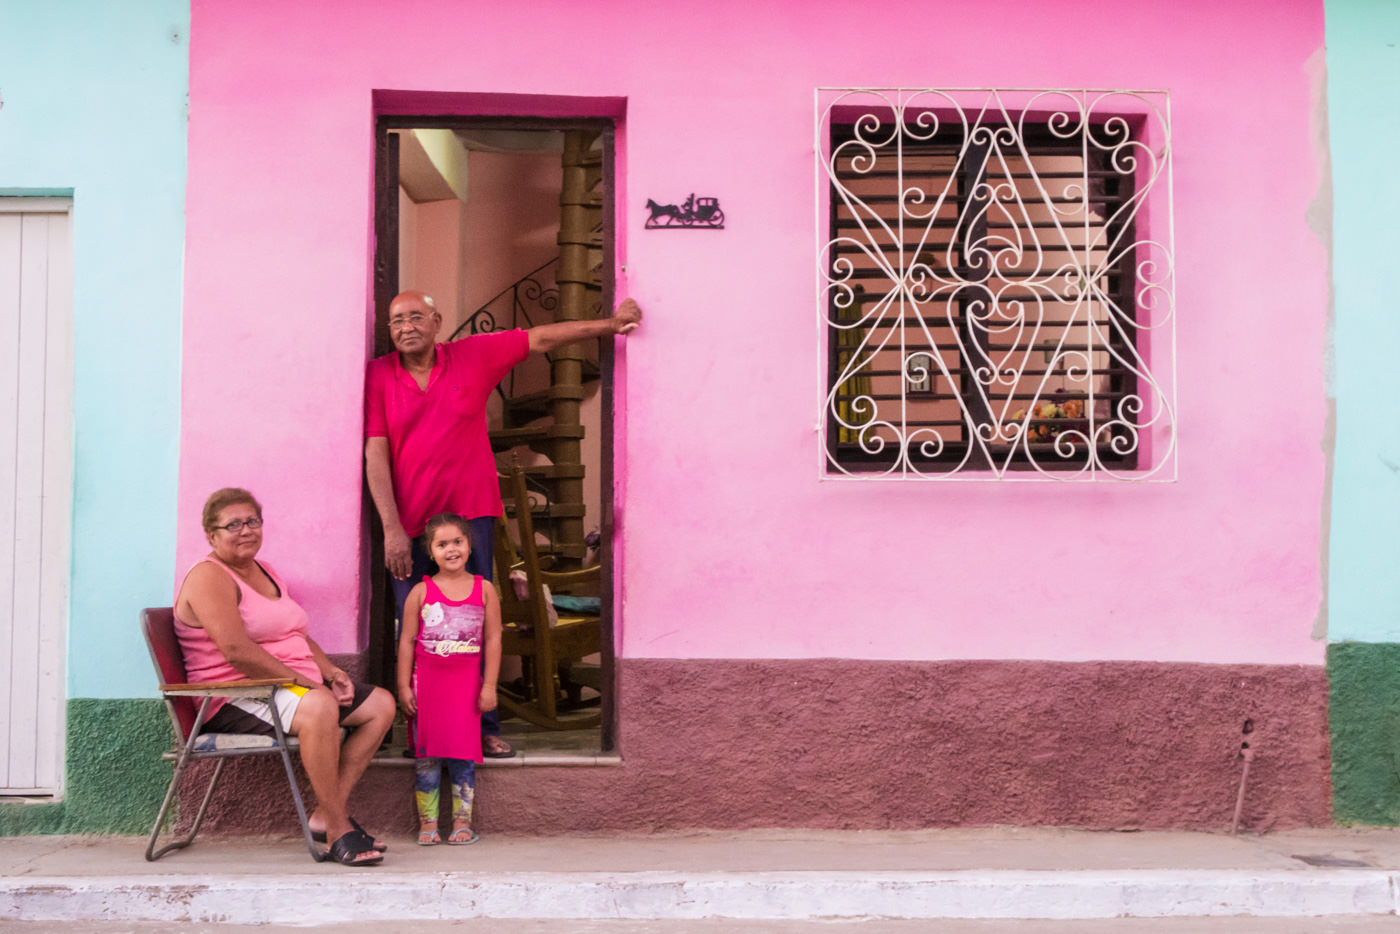 Kubanische Familie ist passend zur Farbe des Hauses gekleidet